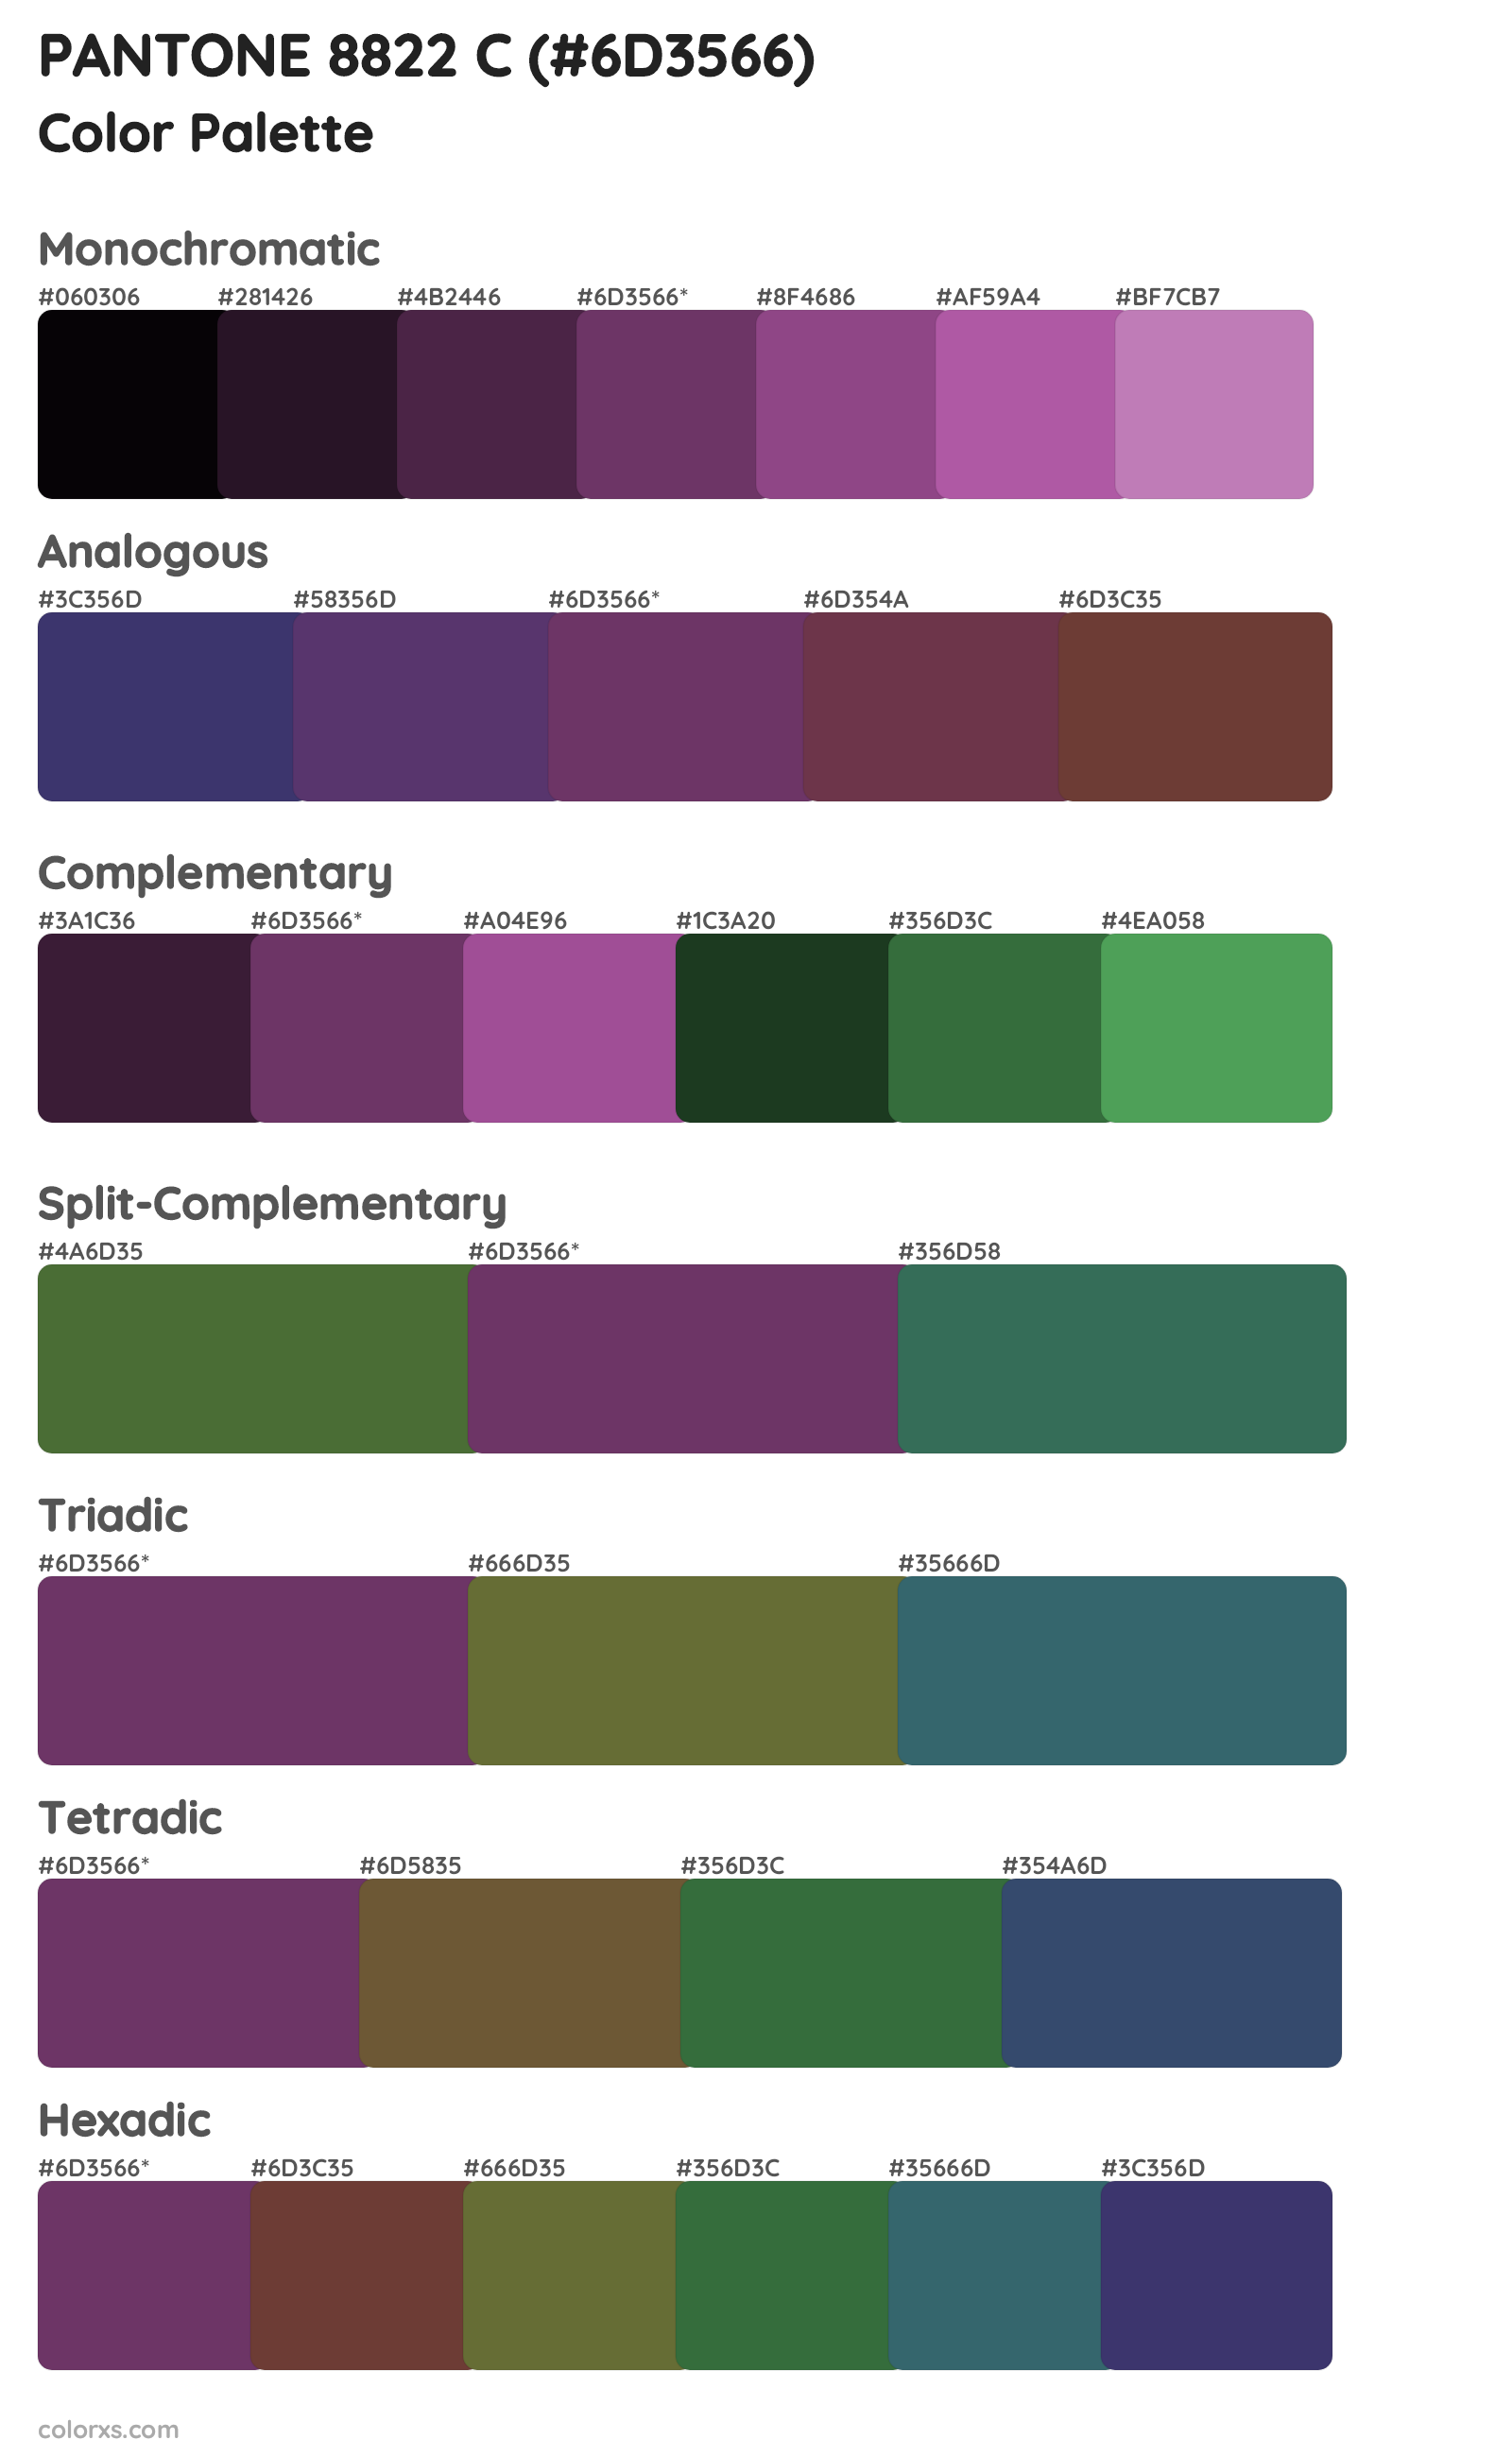 PANTONE 8822 C Color Scheme Palettes